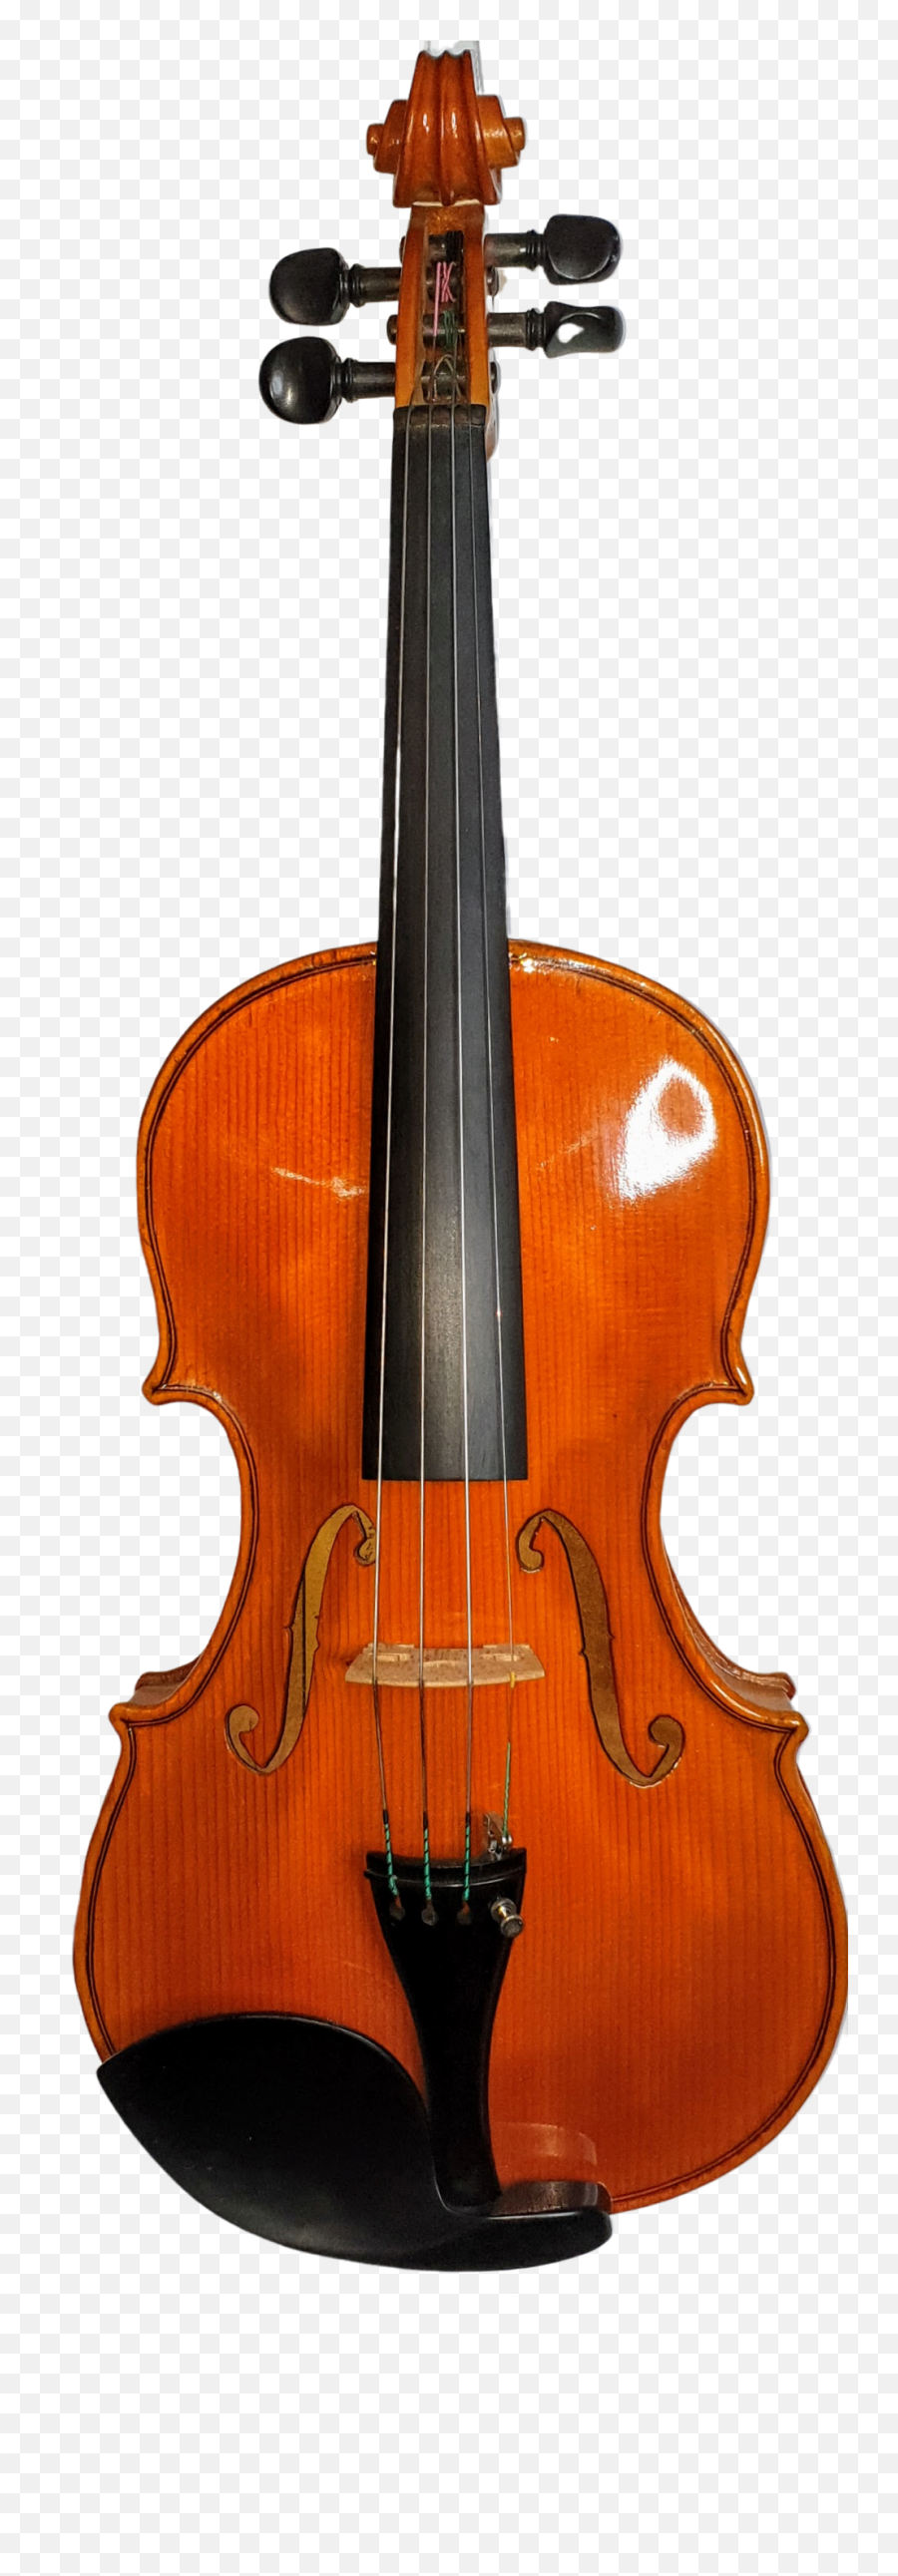 Melbourne Violin Cello And Viola Maker U2014 Fergusonstringscom Png